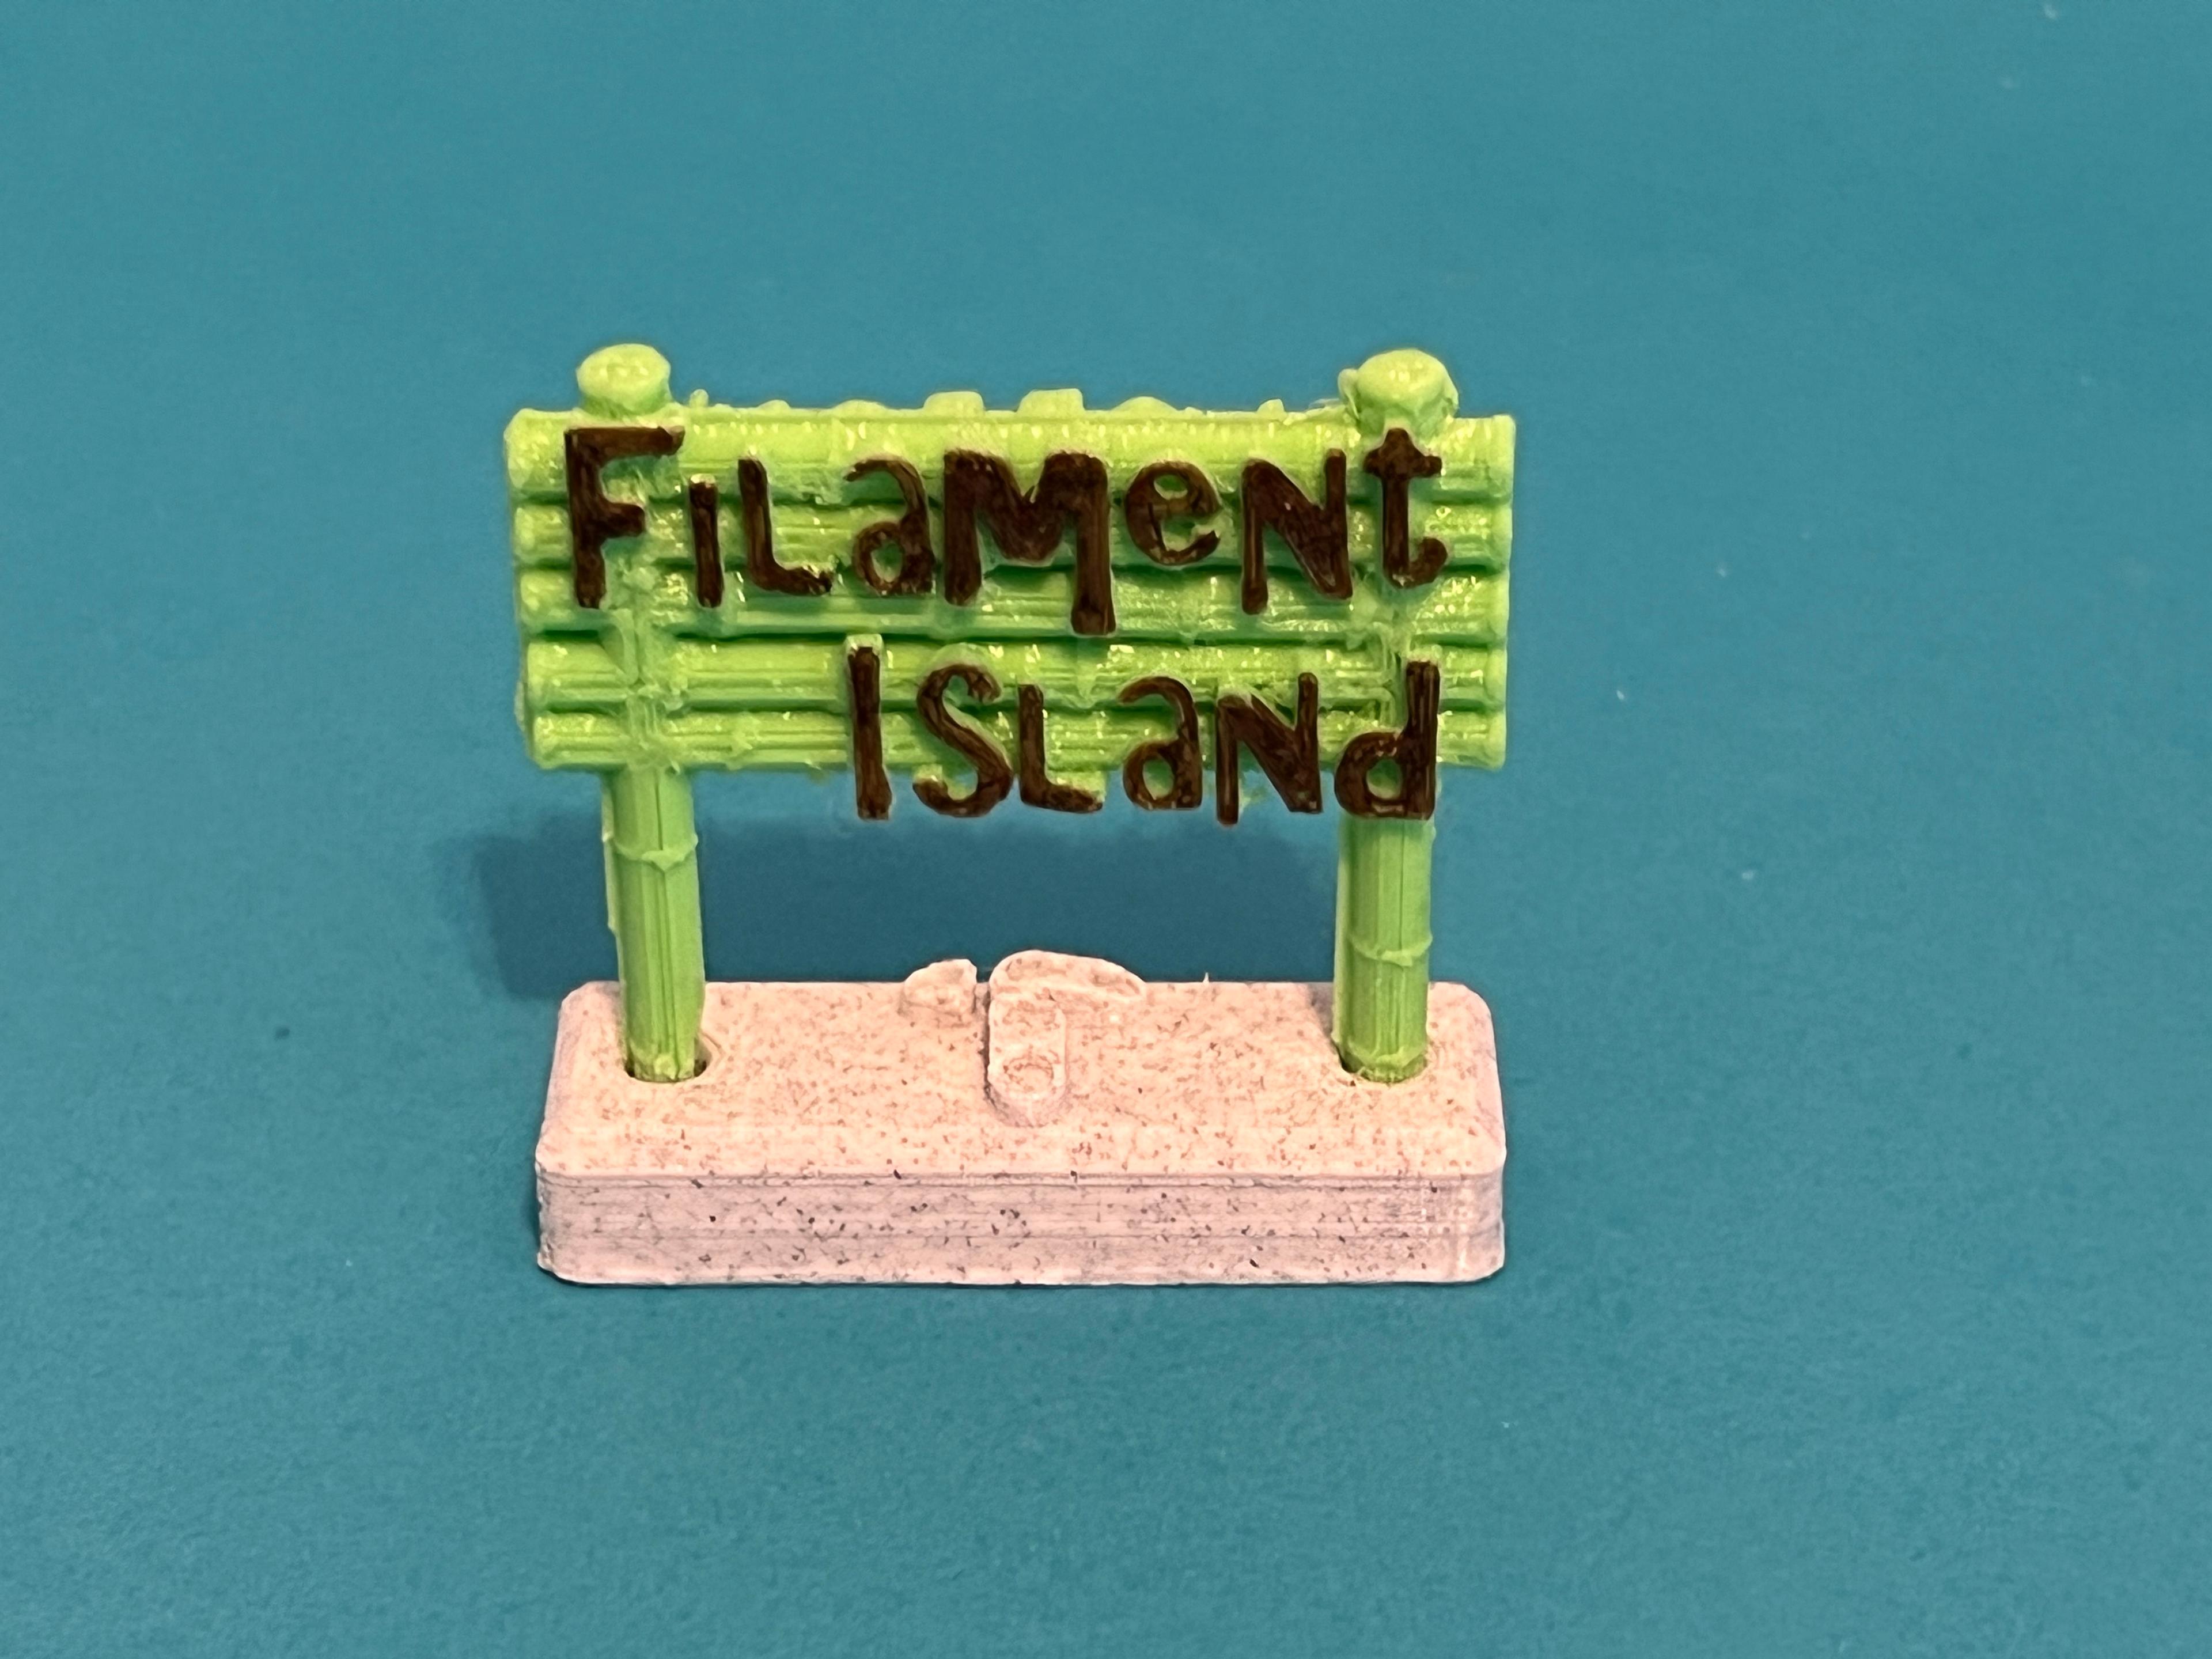 Filament Island 3d model